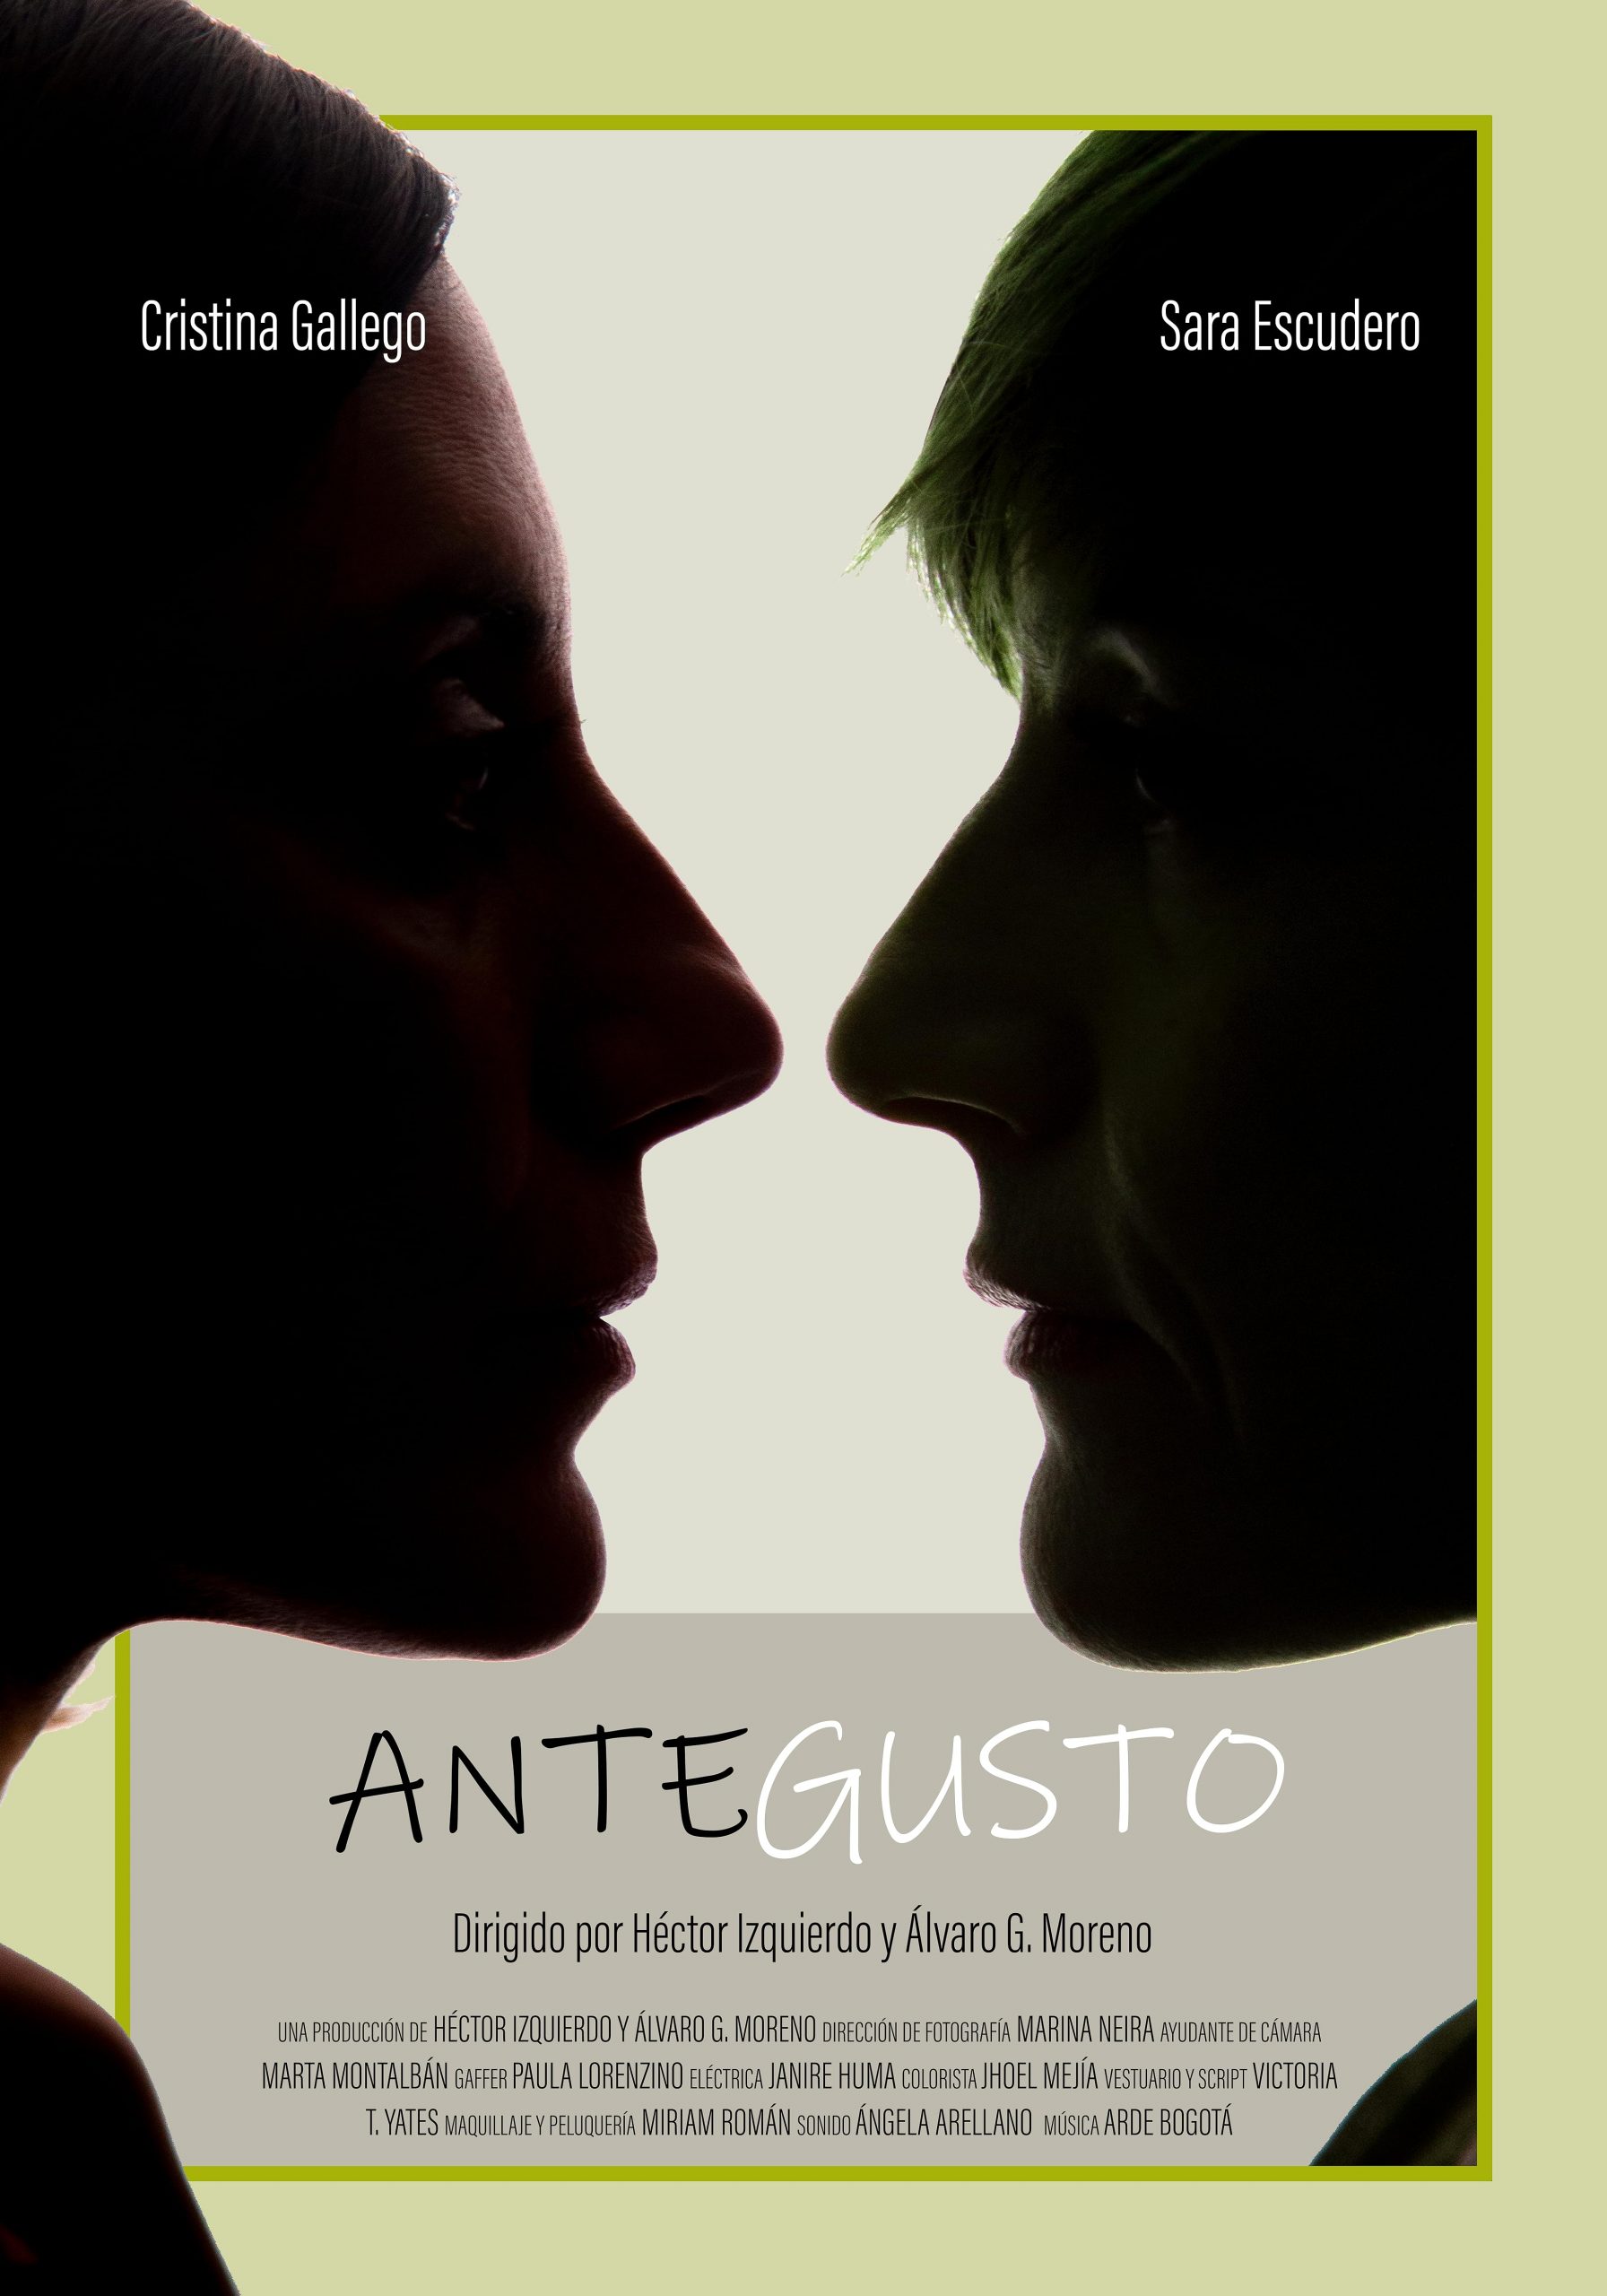 Cartel oficial del cortometraje 'Antegusto' con siluetas en primer plano de Cristina Gallego y Sara Escudero con el título y créditos del film.